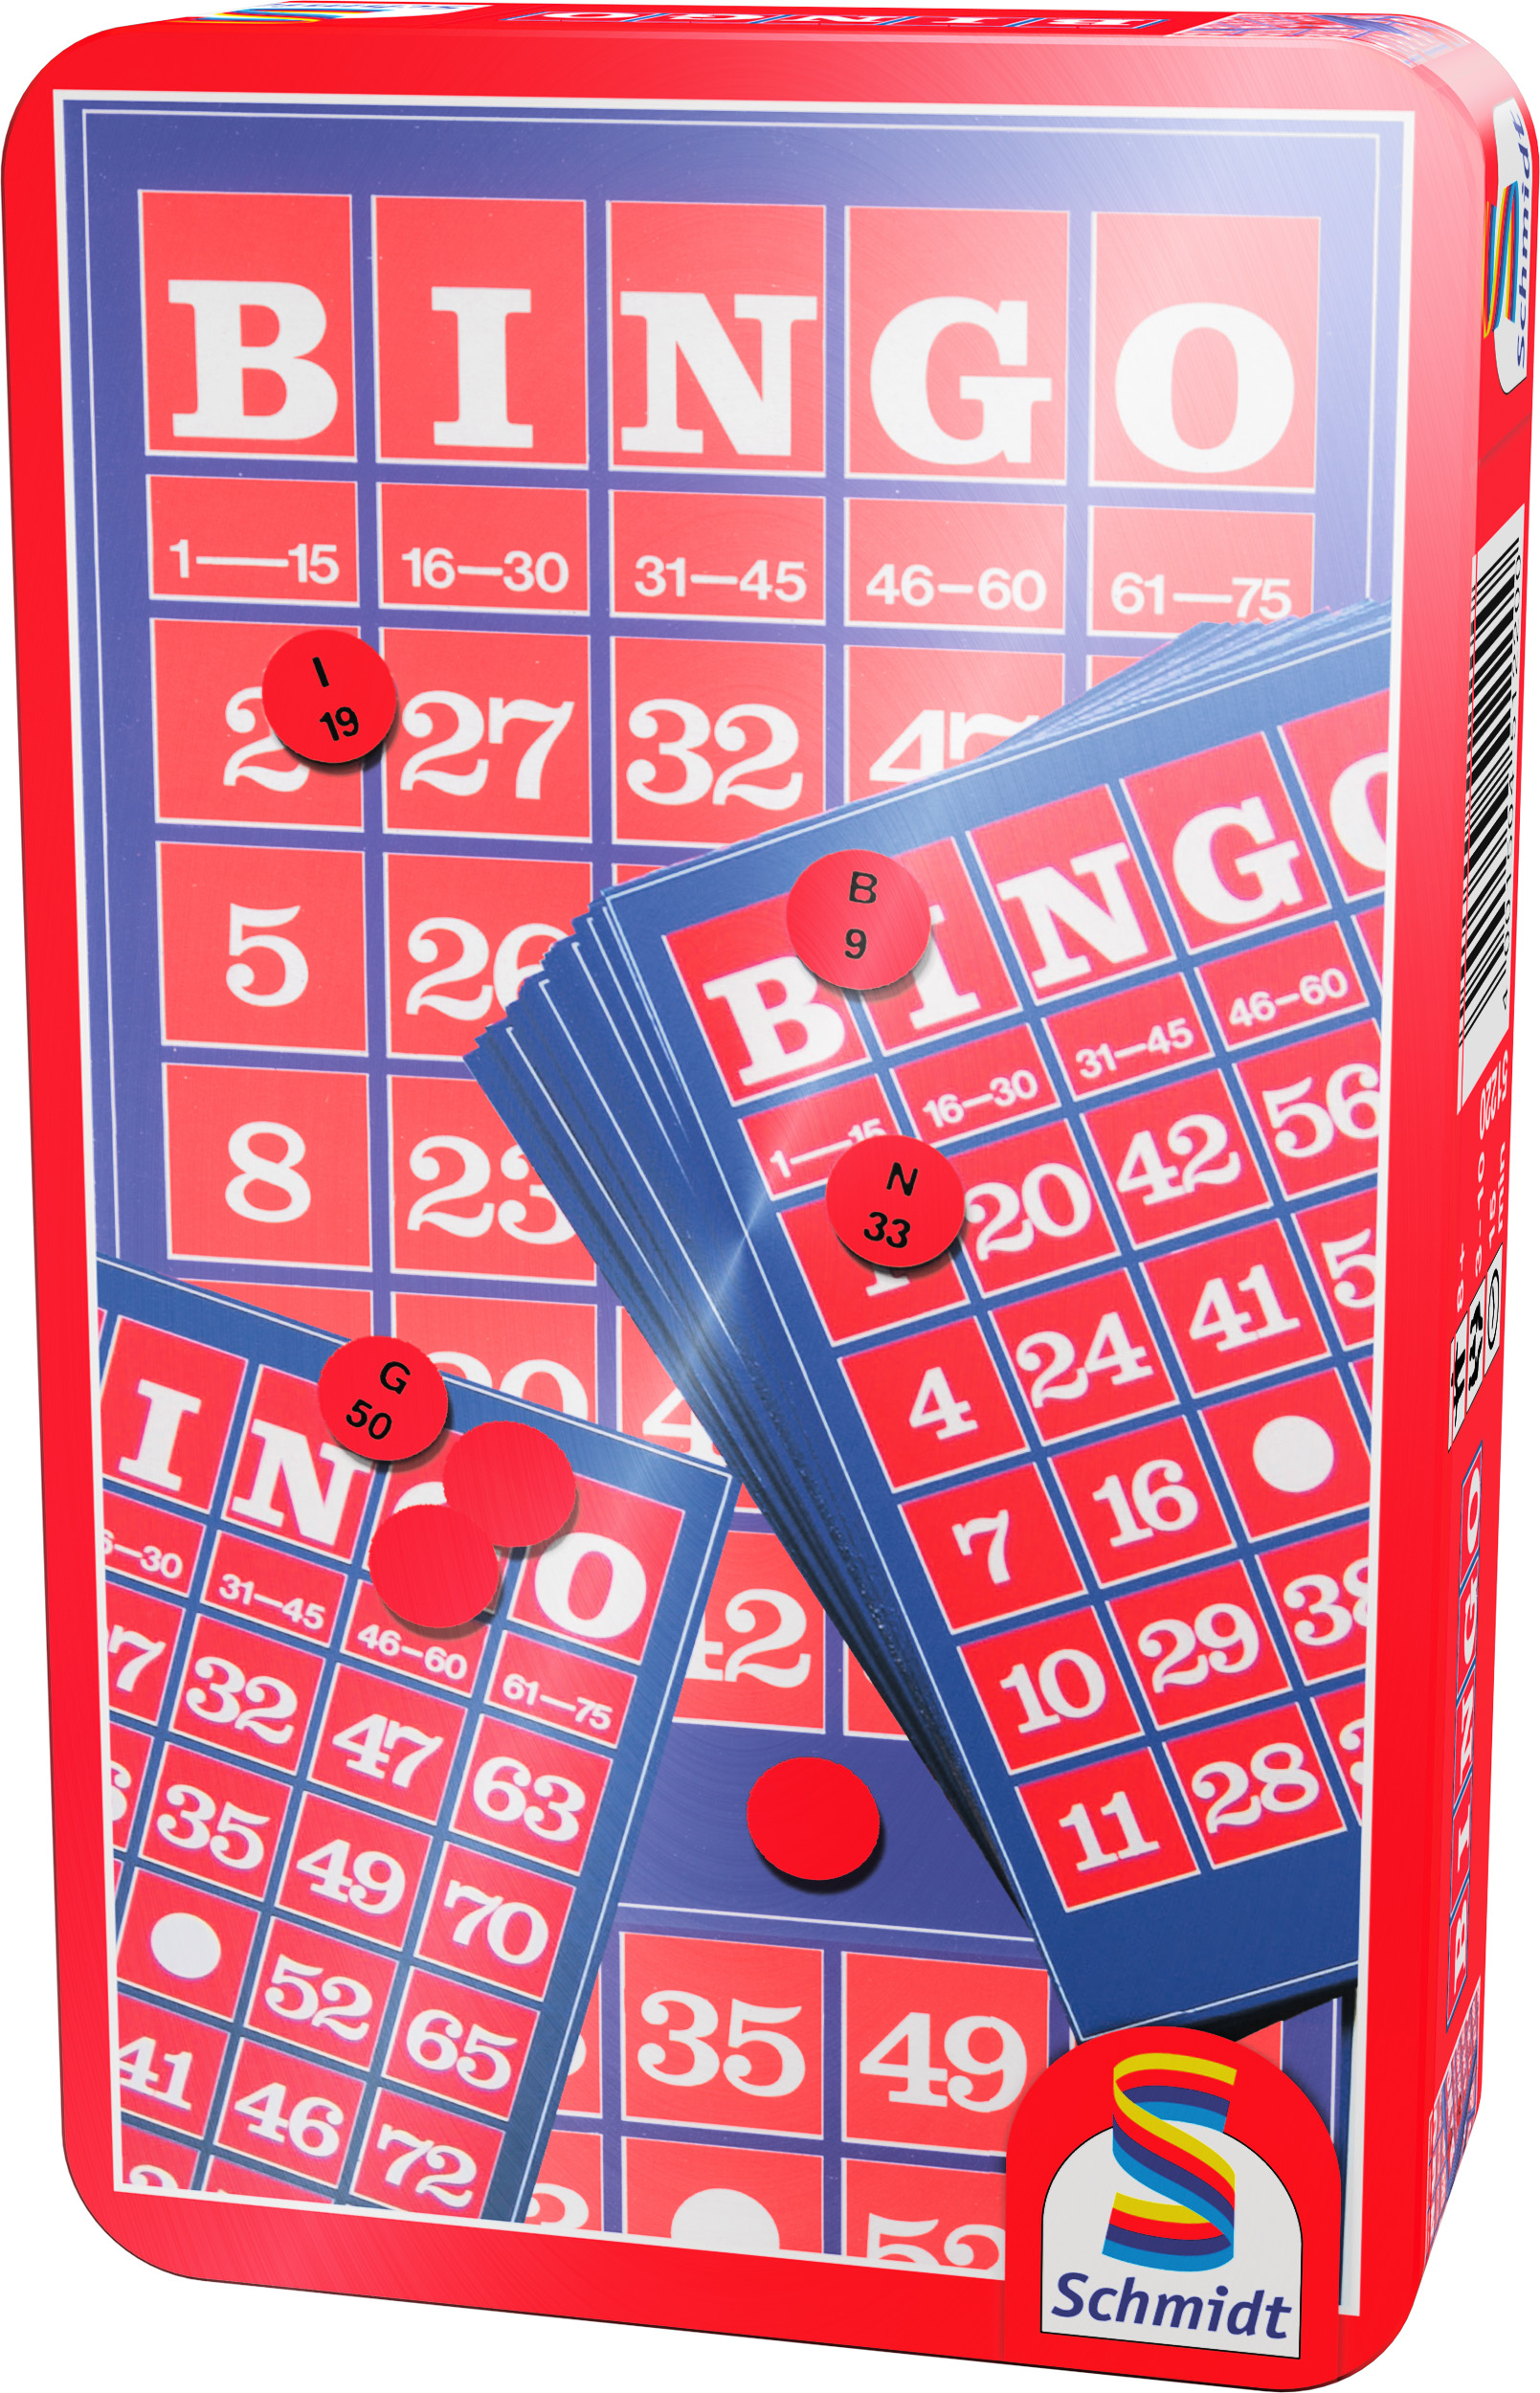 Bingo SCHMIDT Metalldose - Bring-Mich-Mit-Spiel nein SPIELE Gesellschaftsspiel in